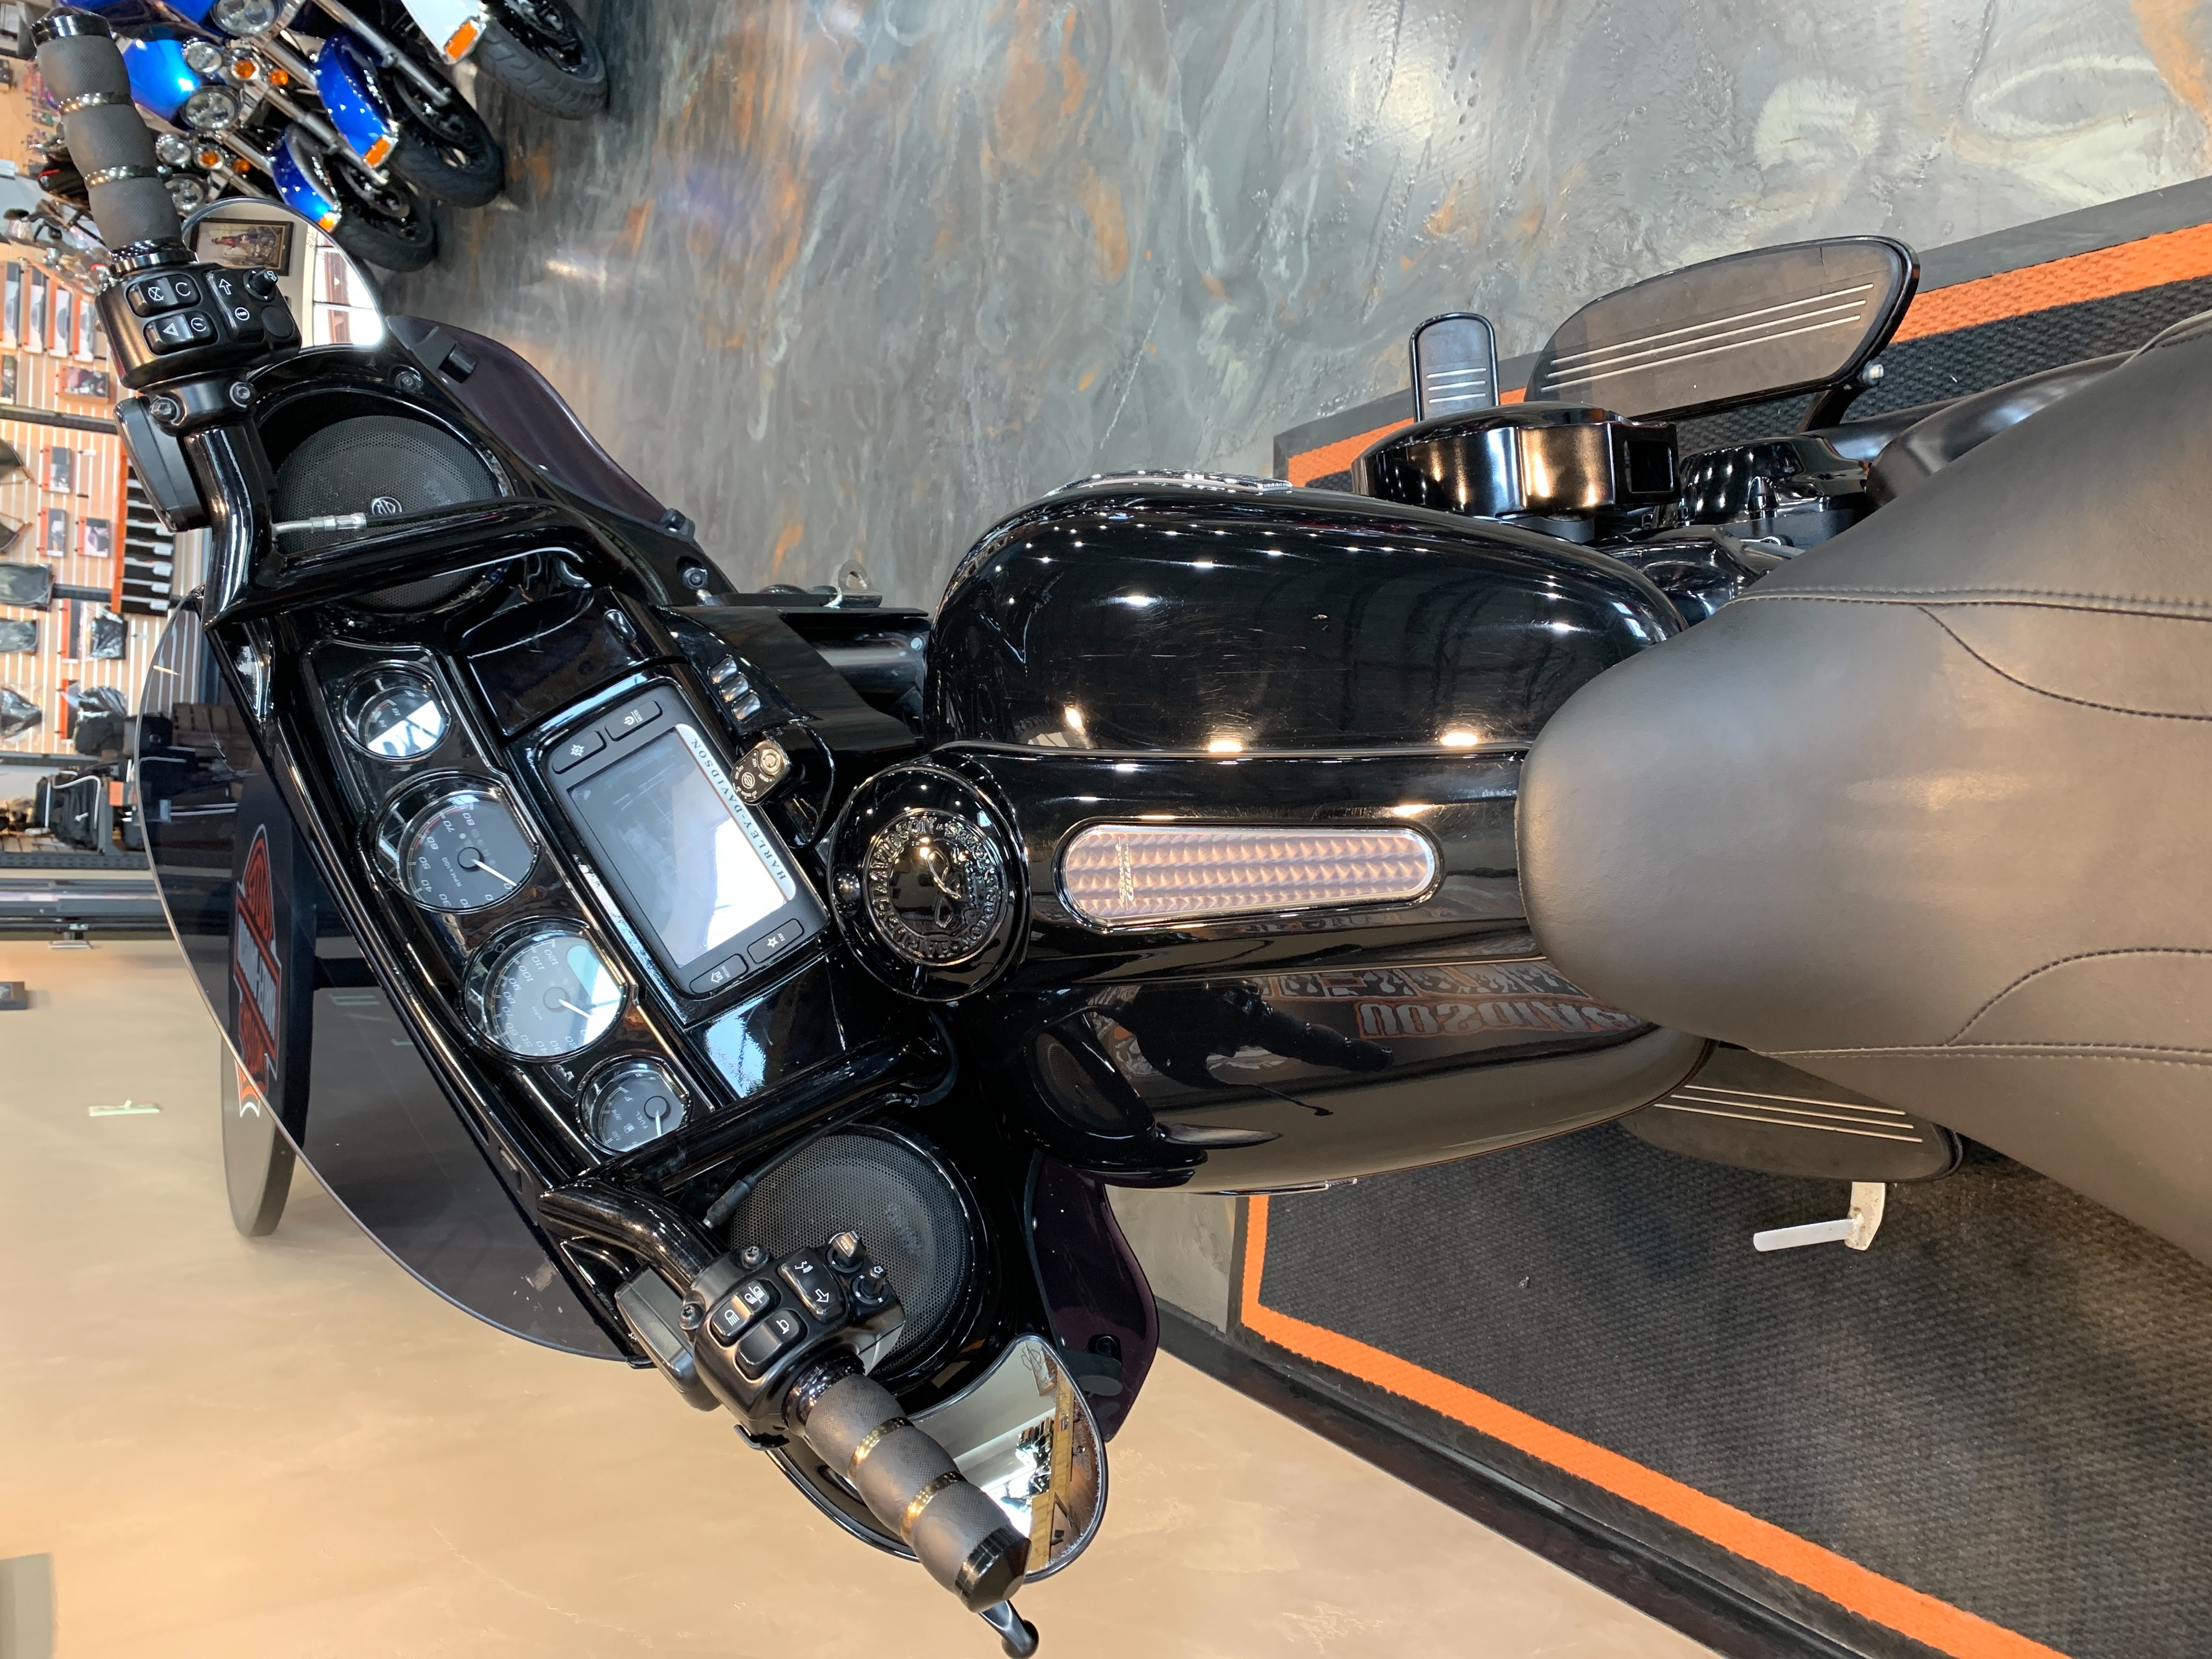 2018 Harley-Davidson Street Glide Special at Vandervest Harley-Davidson, Green Bay, WI 54303